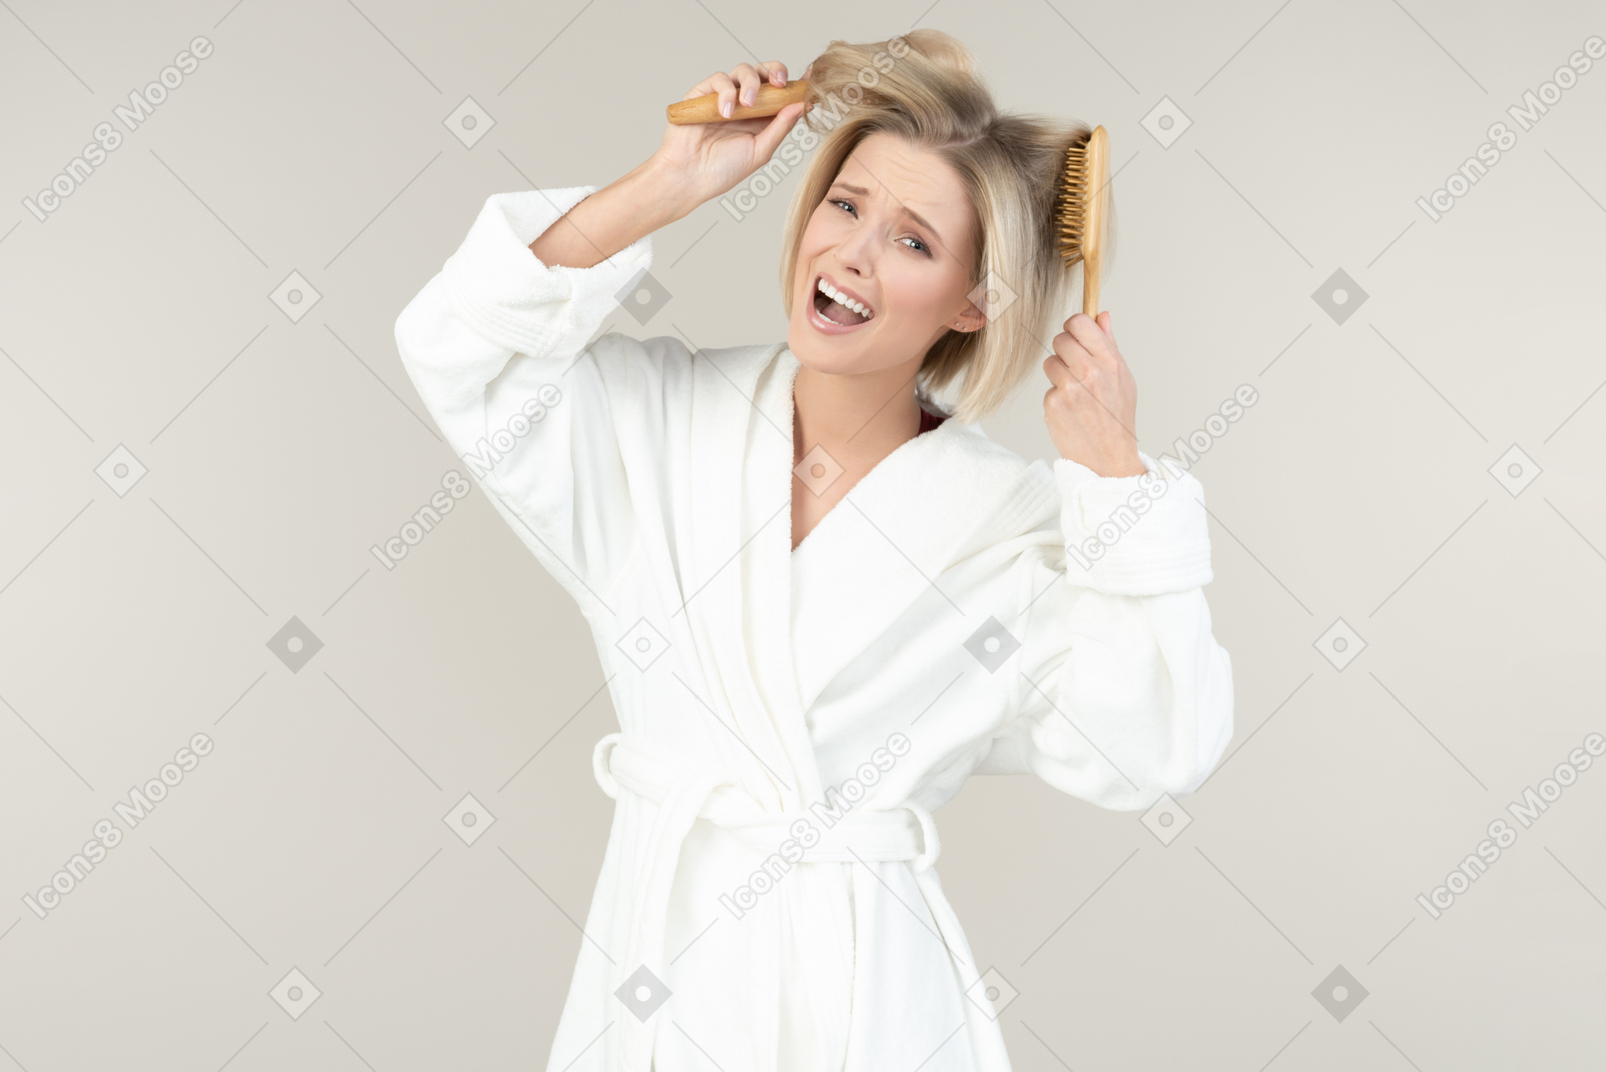 Jeune femme blonde dans un peignoir blanc posant avec toutes sortes d'articles de toilette